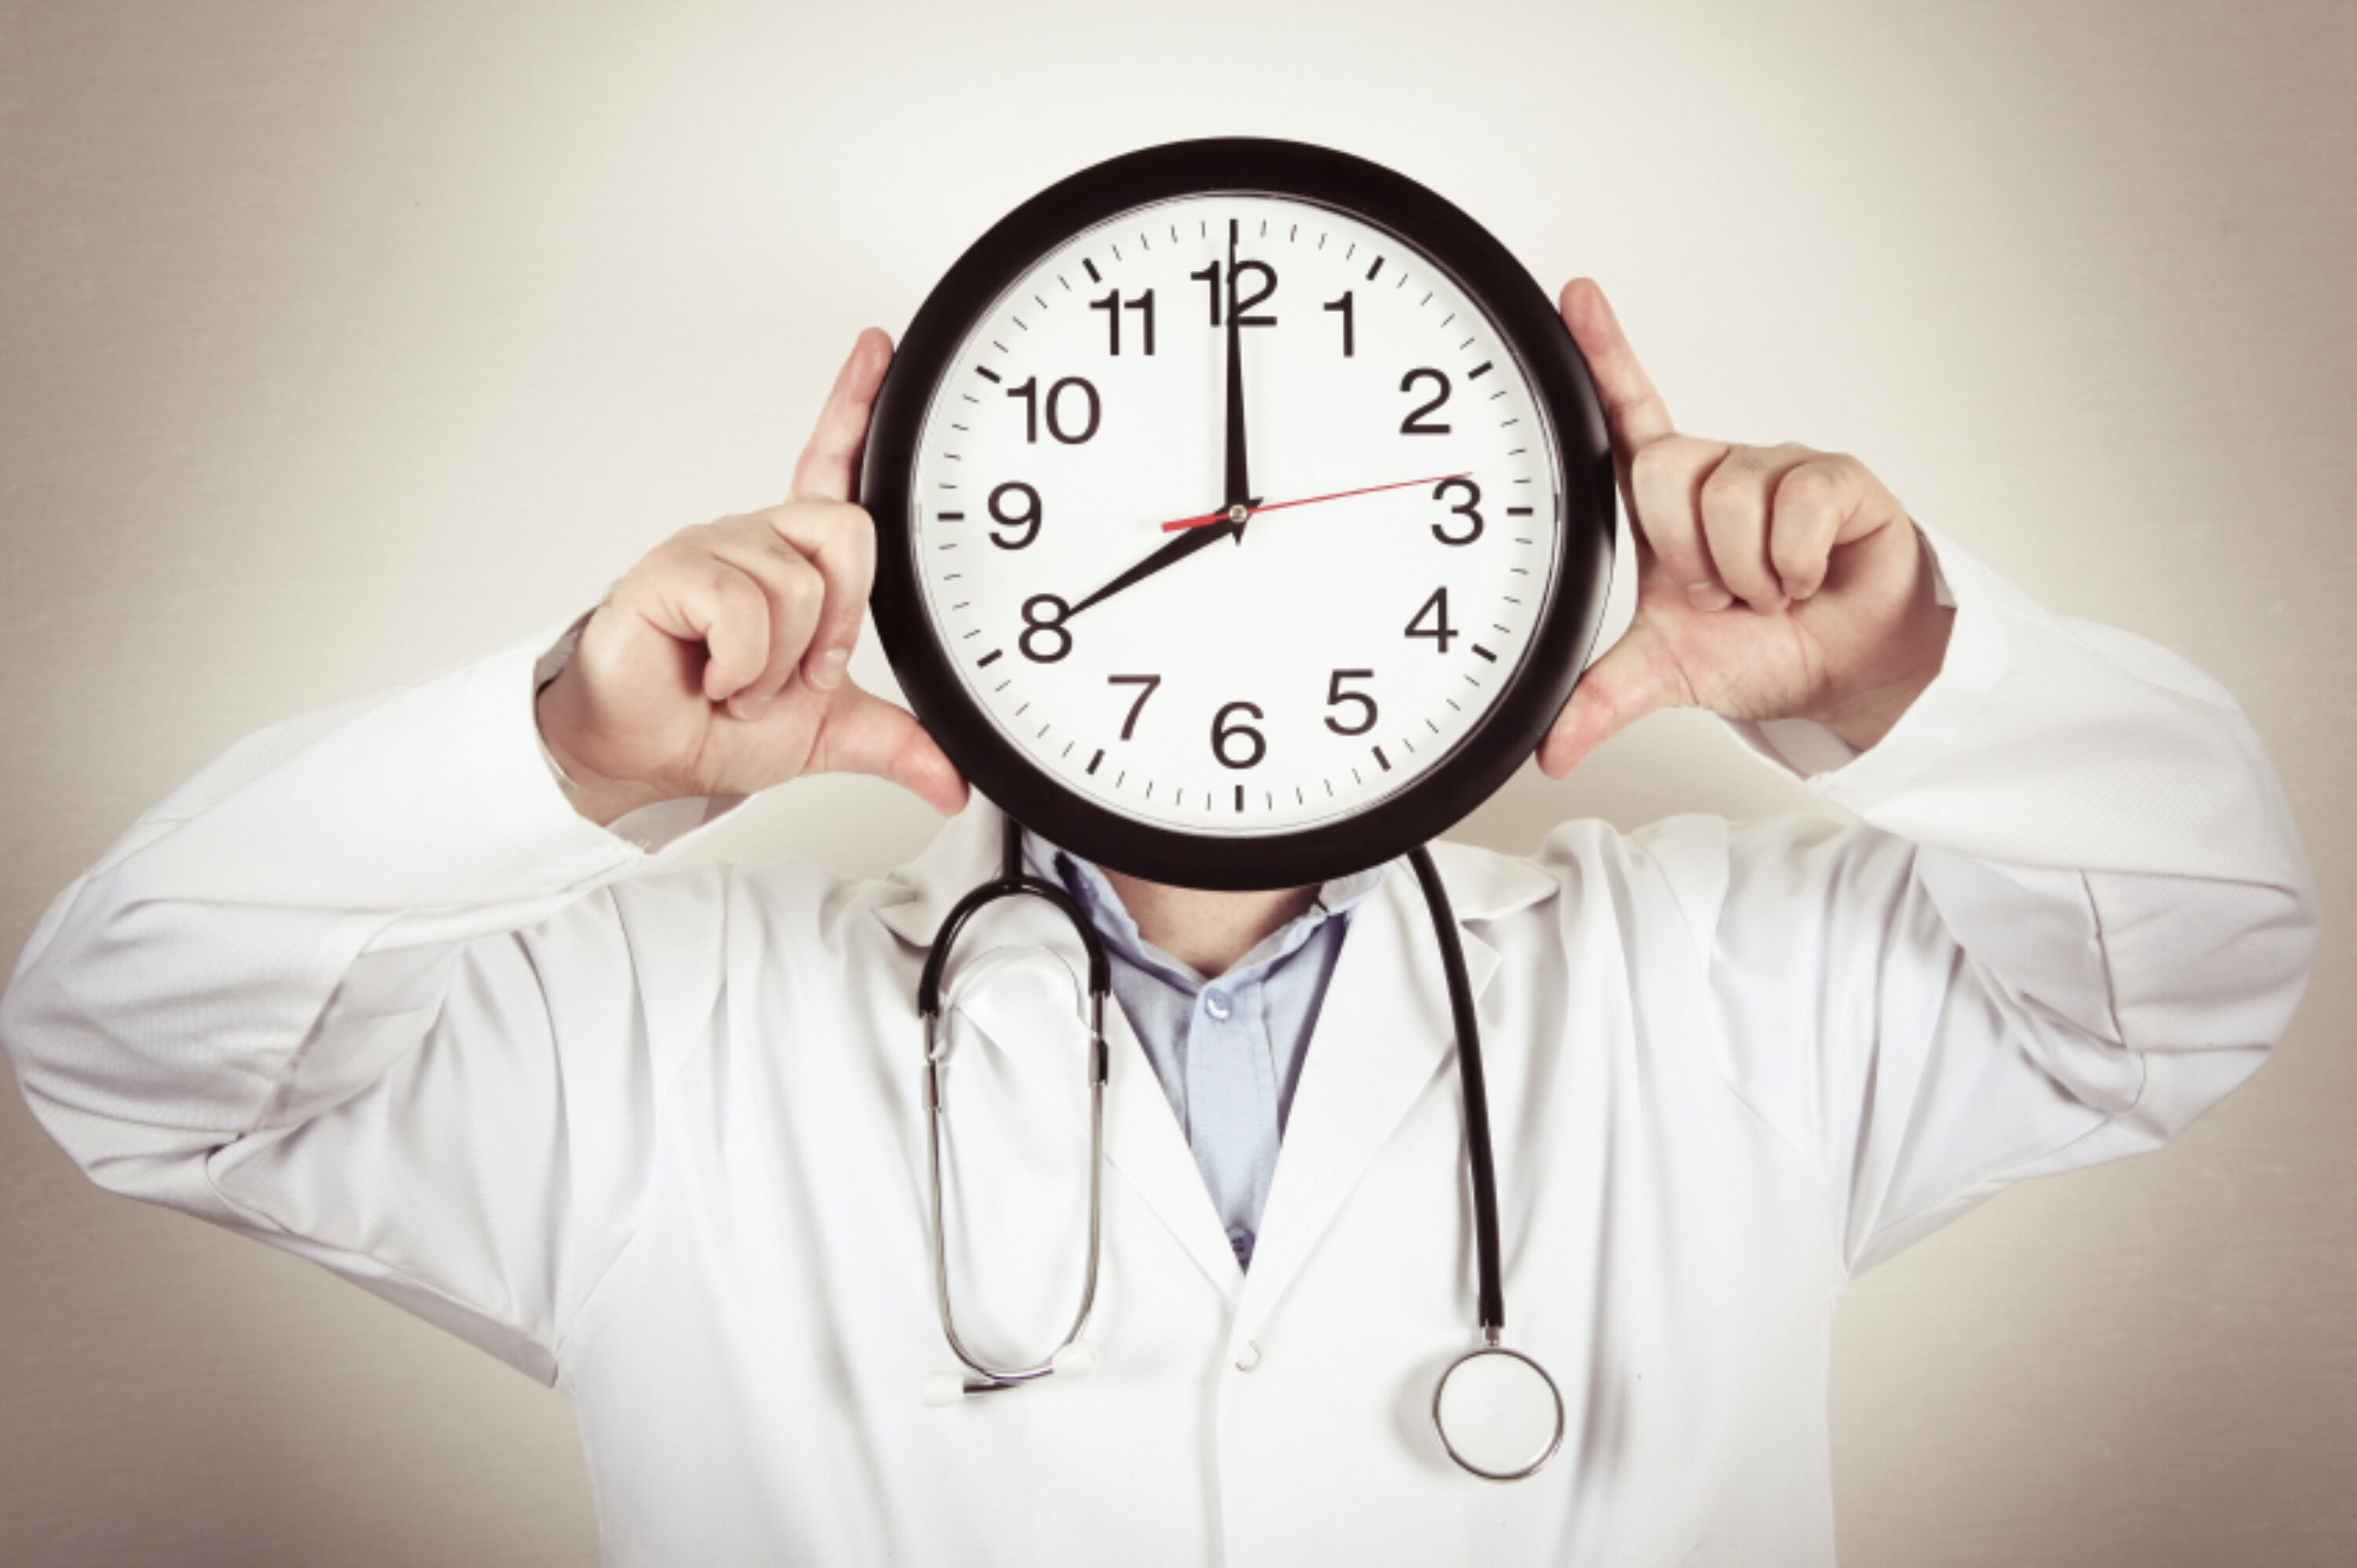 Доктор час doctor clock. Часы для врача. Врач с часами. Тайм менеджмент врача. Менеджмент в медицине.